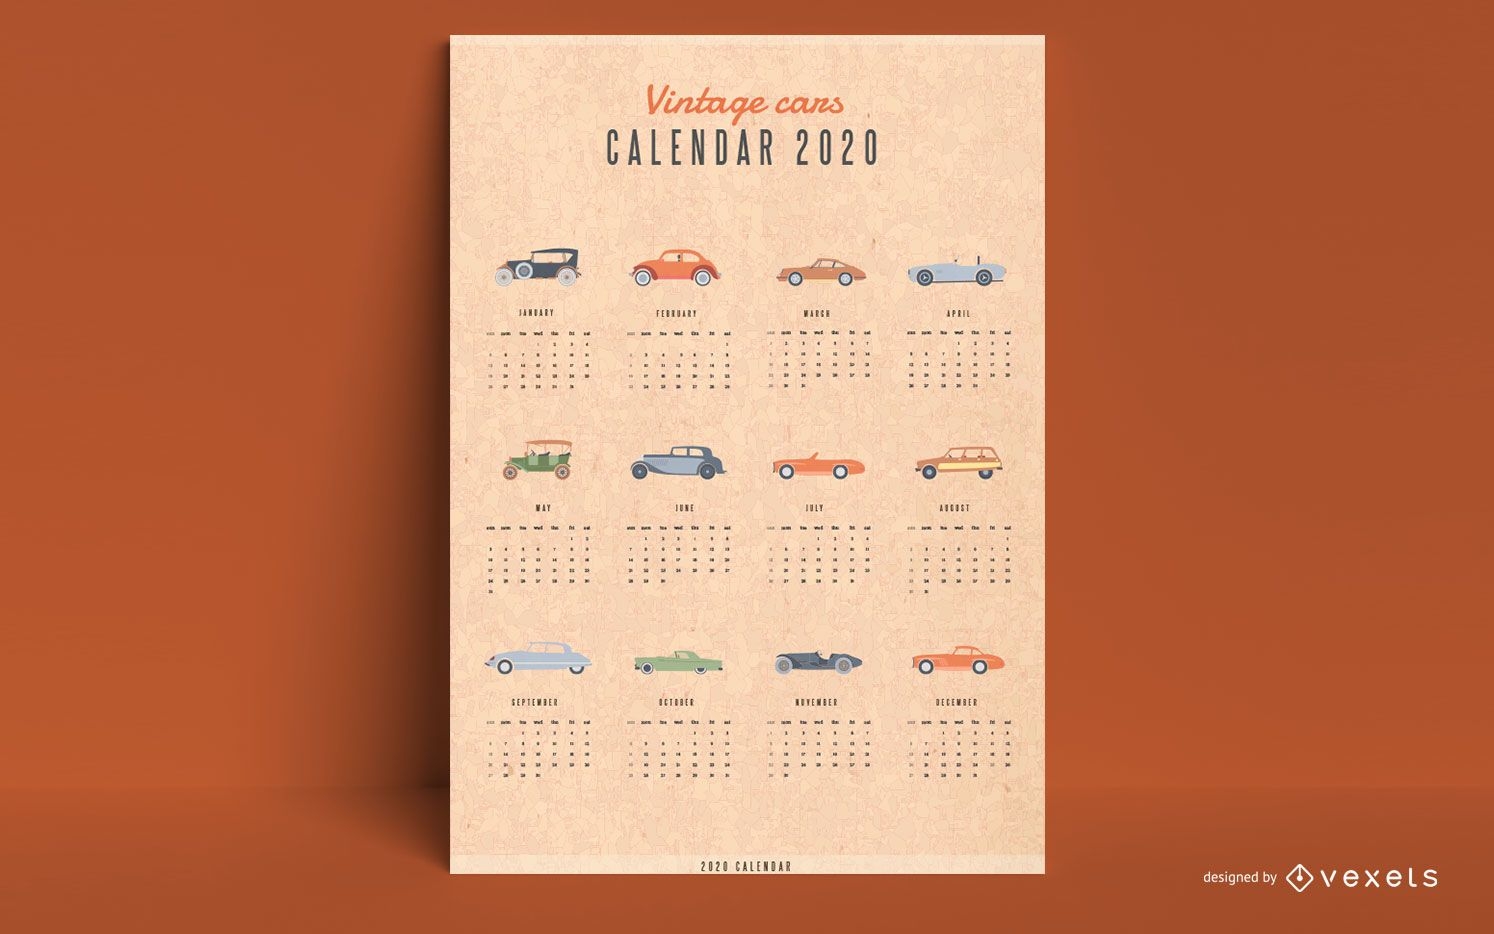 Calendario 2020 coches antiguos